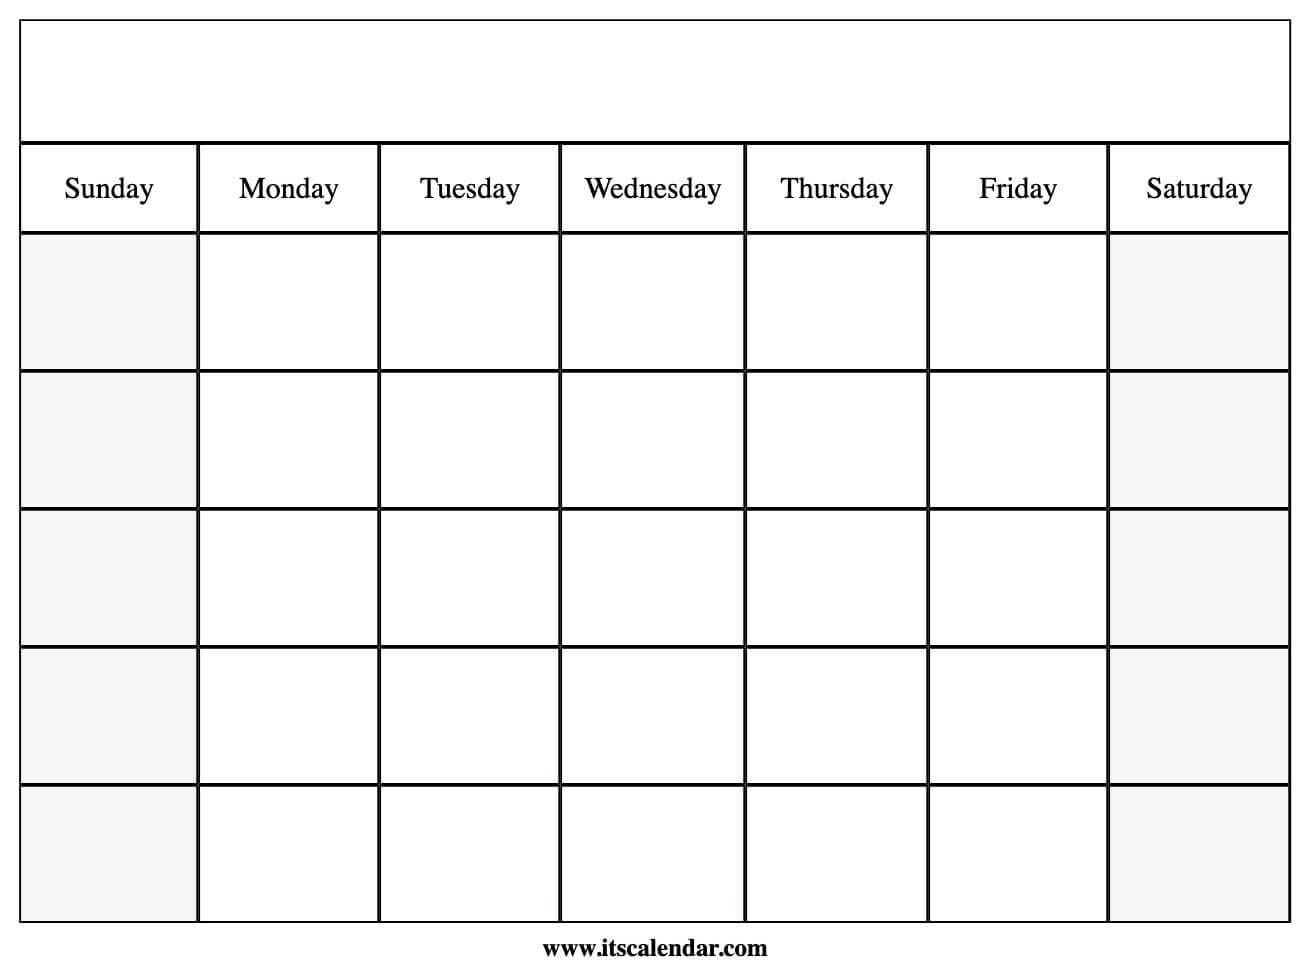 Blank Calendar Template Monday Friday - Example Calendar Printable